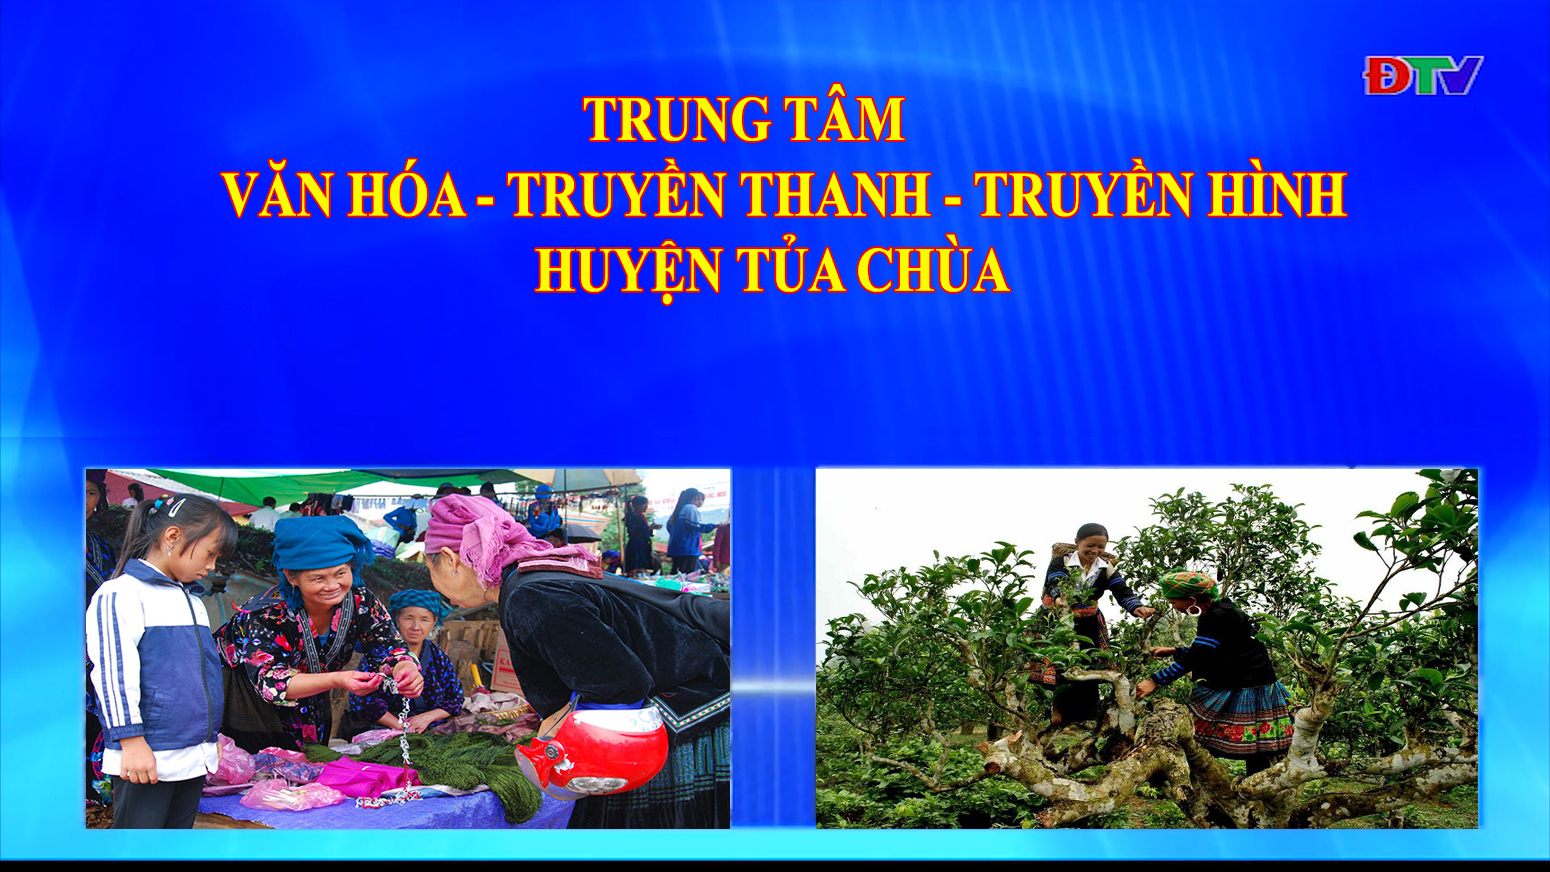 Trung tâm Văn hóa Truyền thanh Truyền hình huyện Tủa Chùa (Ngày 8-5-2020)